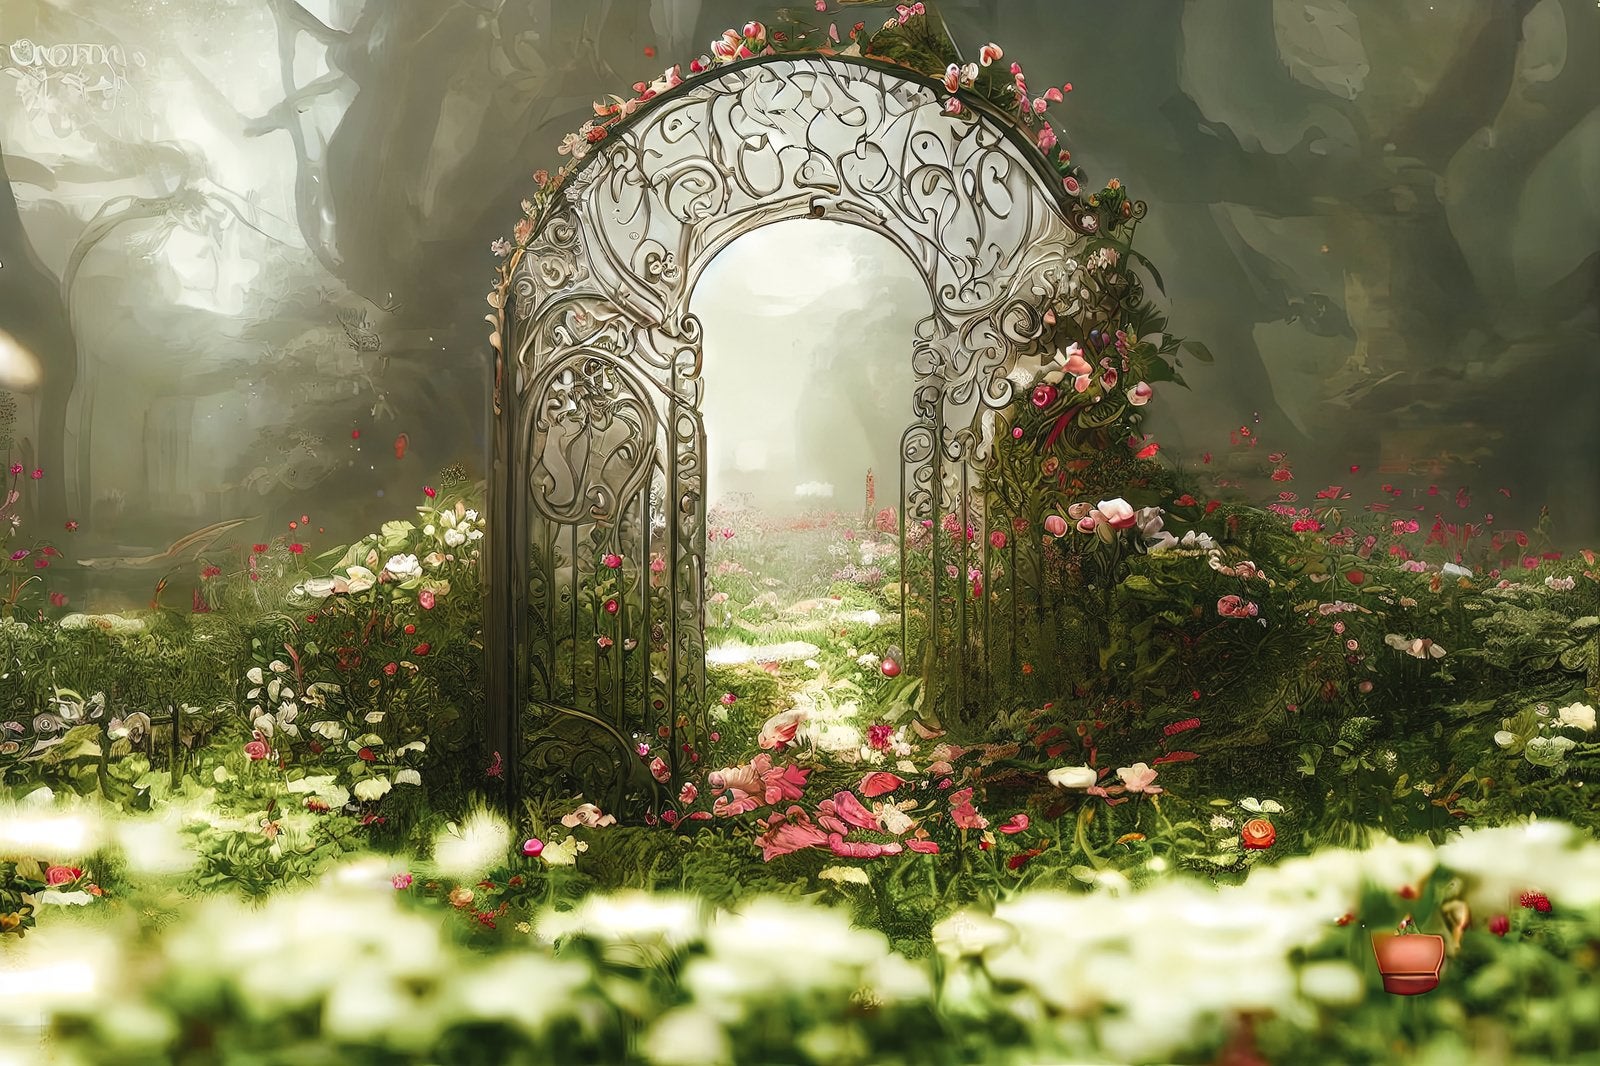 「妖精の世界へと続く門」の写真